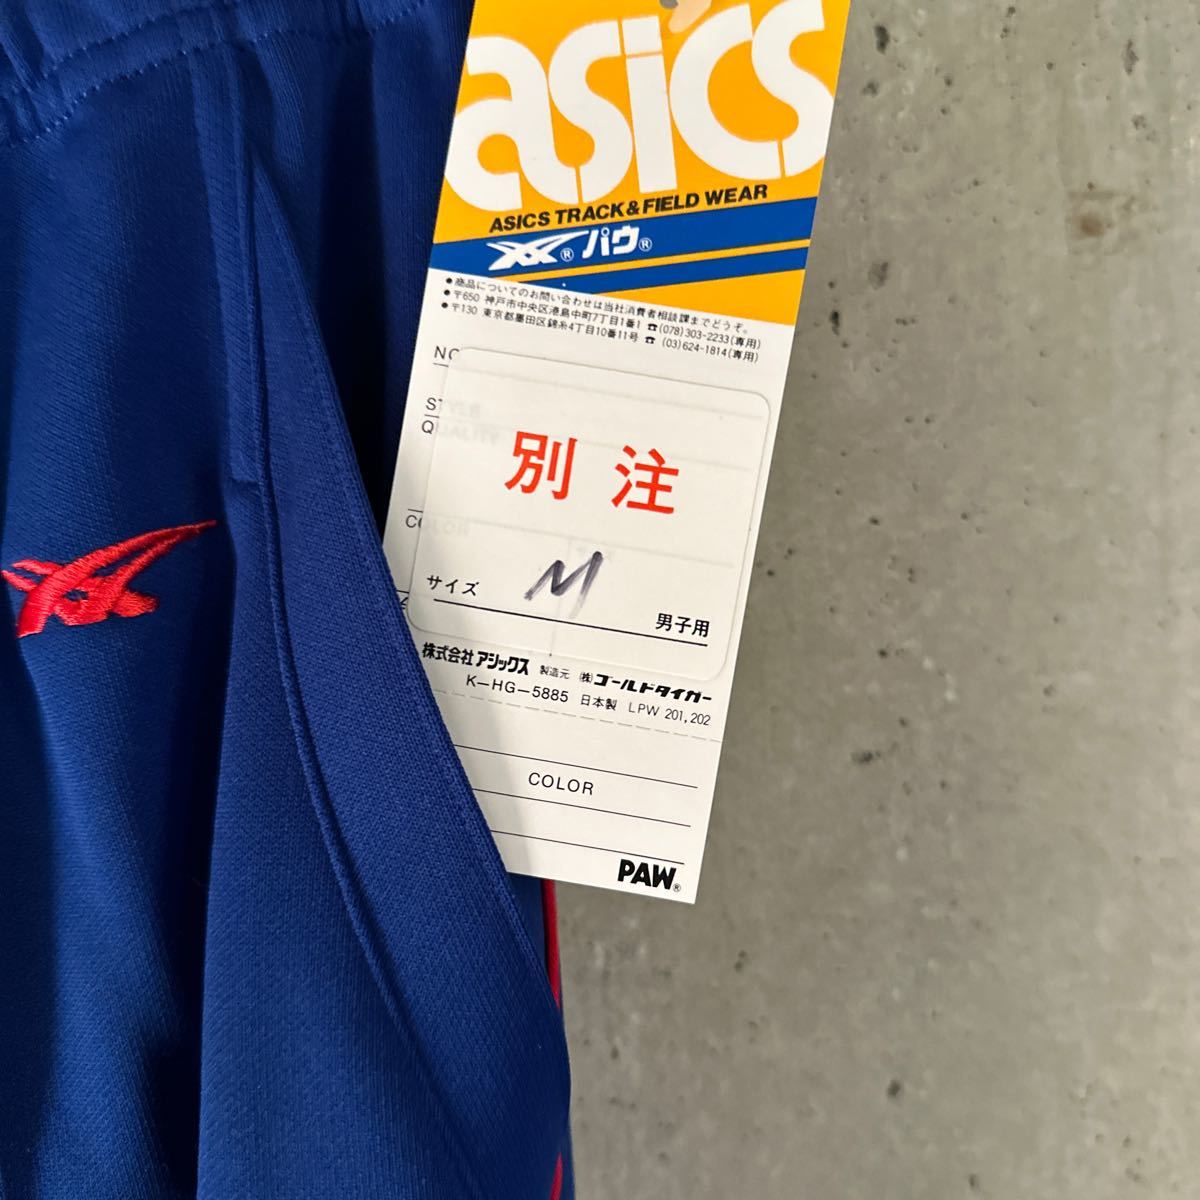 80 годы Asics pau специальный заказ цвет джерси внизу ограничение неиспользуемый товар не использовался товар Showa Retro грузовик брюки onitsuka вышивка 